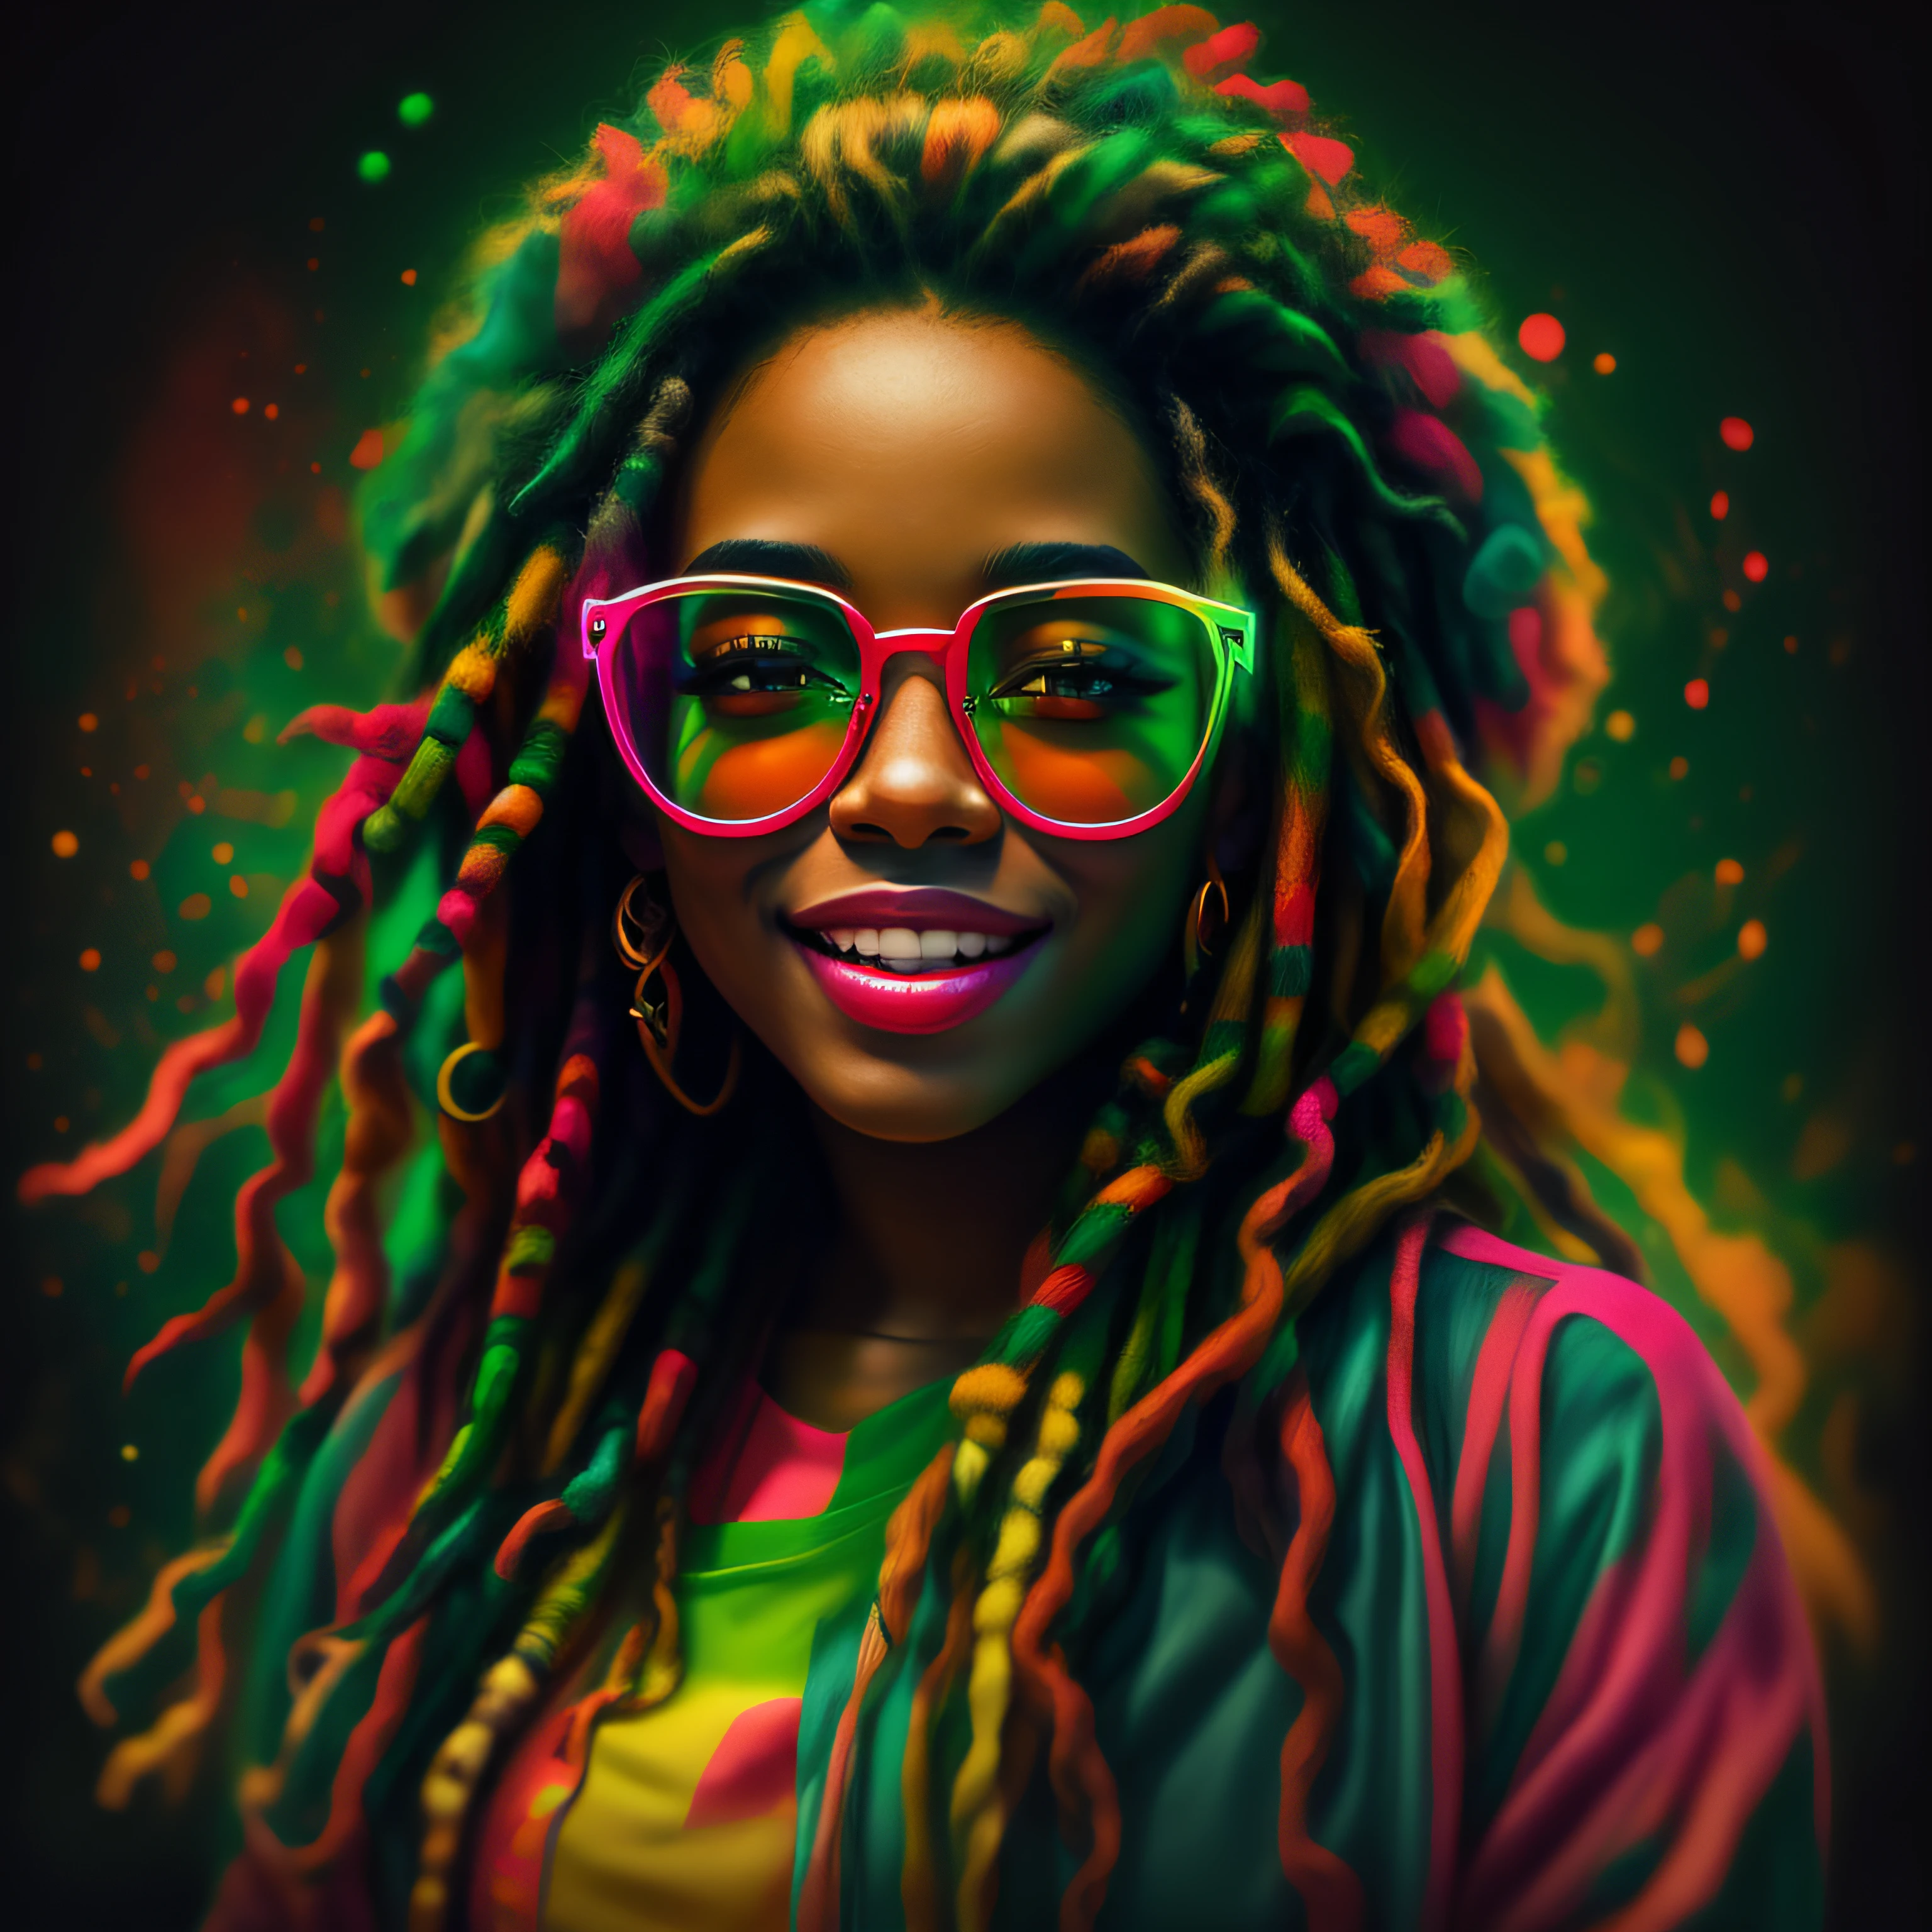 Vektorgrafiken, blur art (1 lächelndes Rasta-Mädchen in reggaefarbener Kleidung) Mafia, Kinobeleuchtung im Neon-Stil, Tinte bespritzt